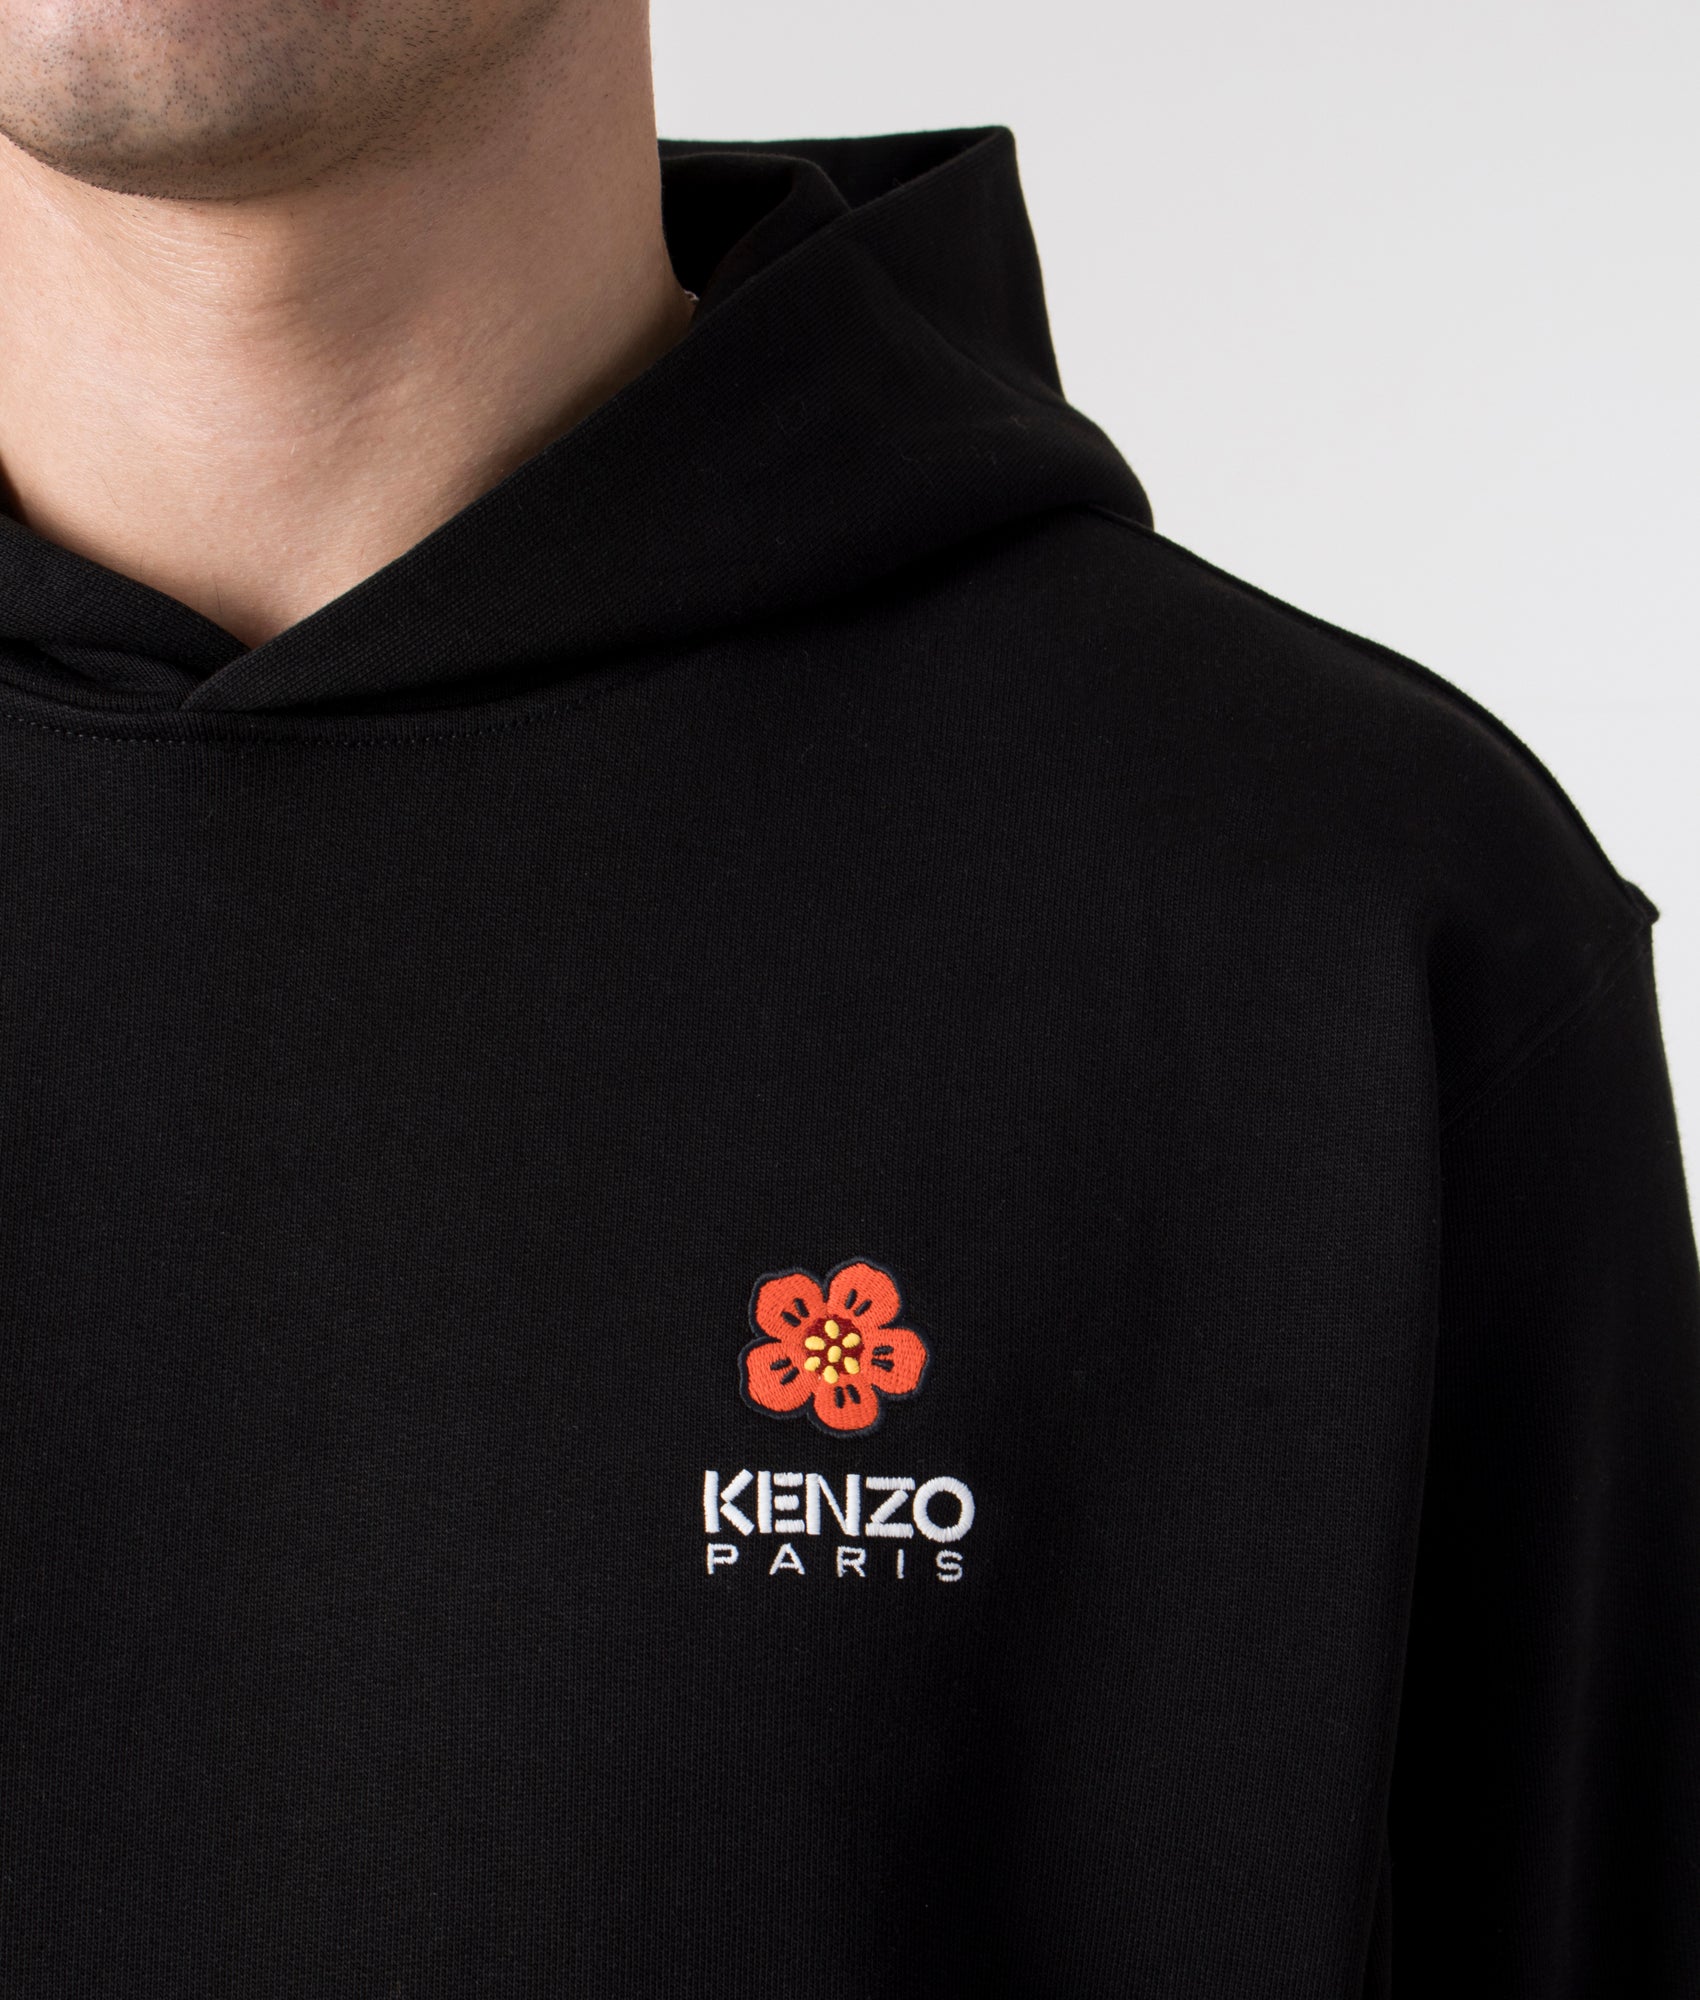 Kenzo Boke Flower Crest Fz Hoodie - Fd55sw4424mf.01